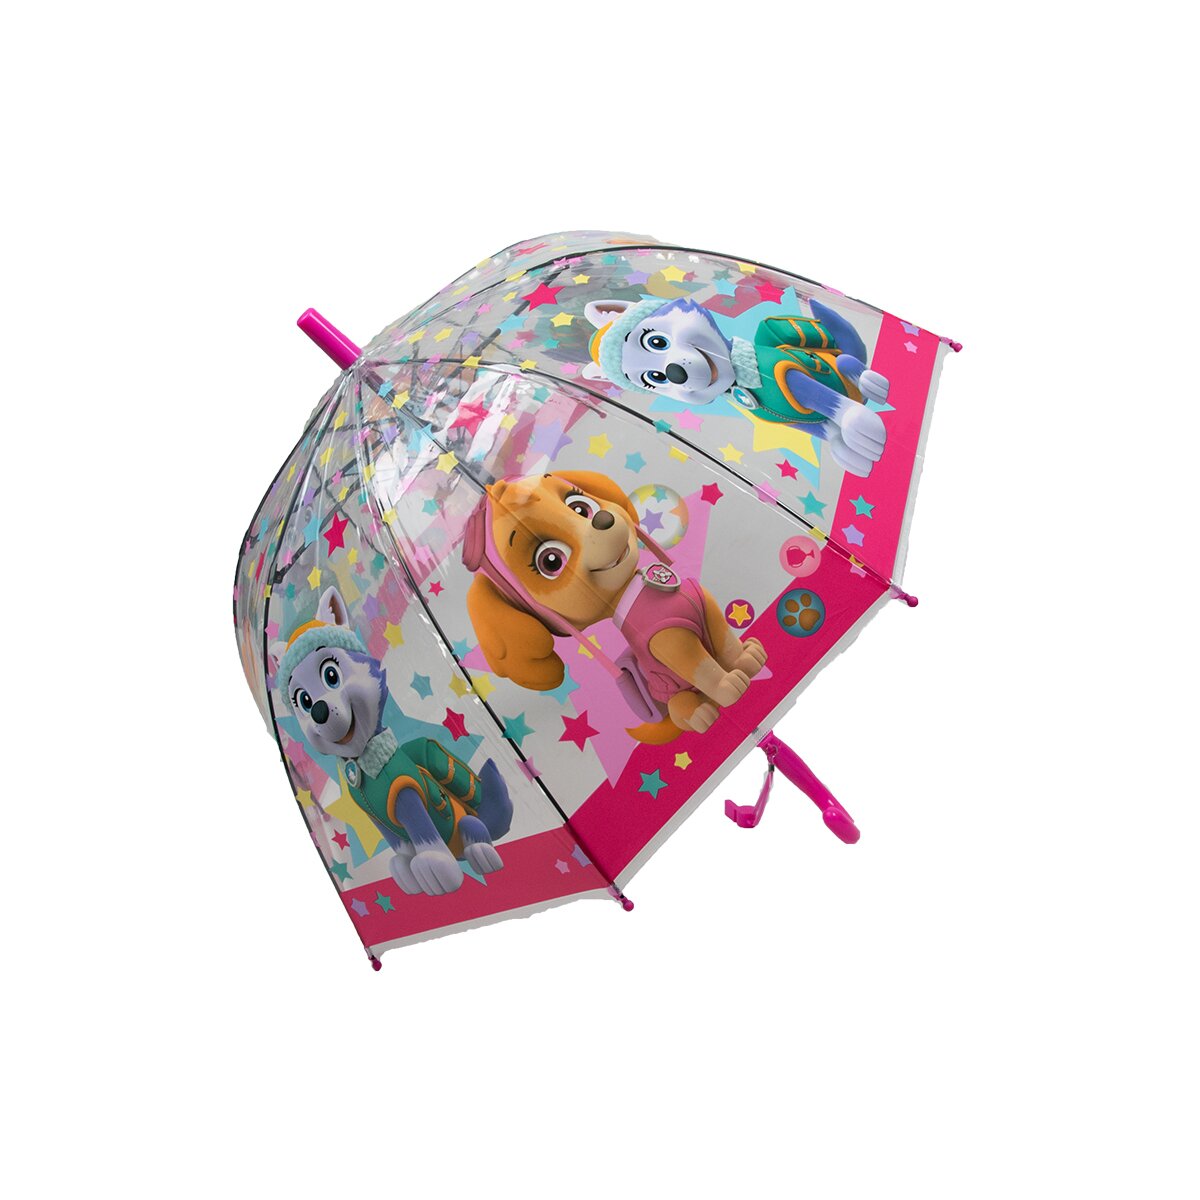 Kinderschirm | Regenschirm | Schirm | Trillerpfeife am...